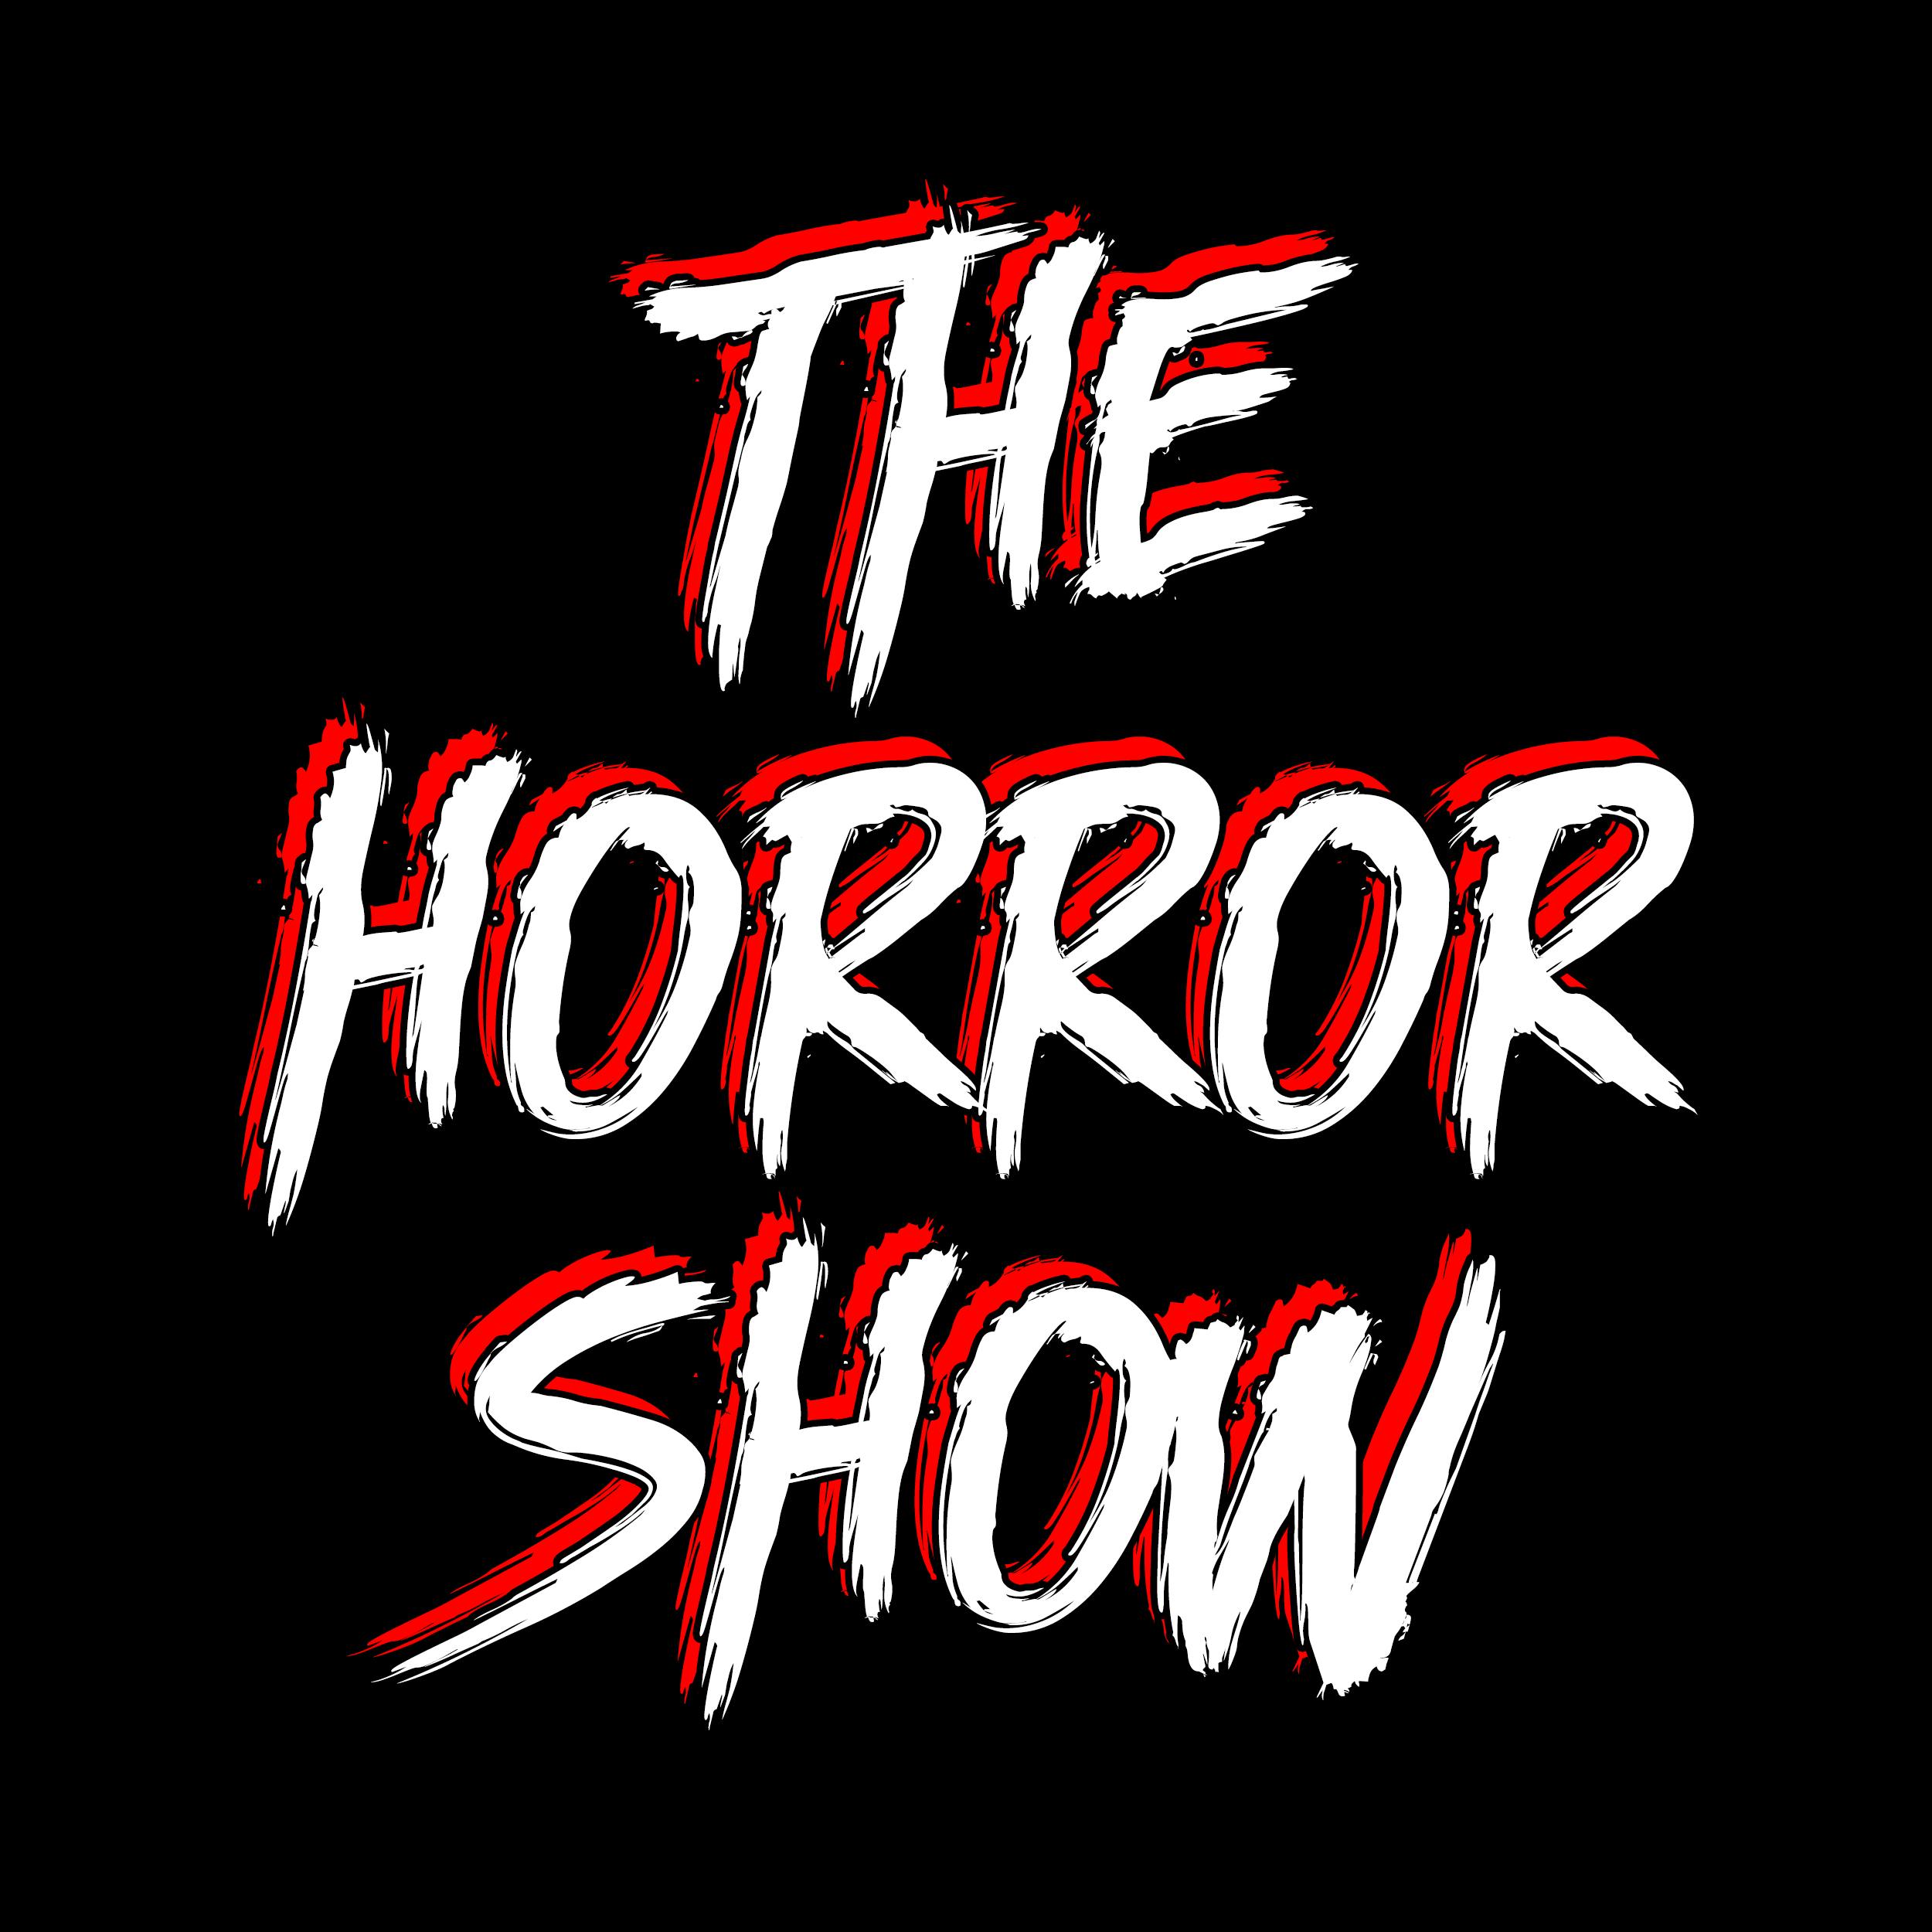 THS #313: Serial Killer III - Banned - The Hellraiser Franchise